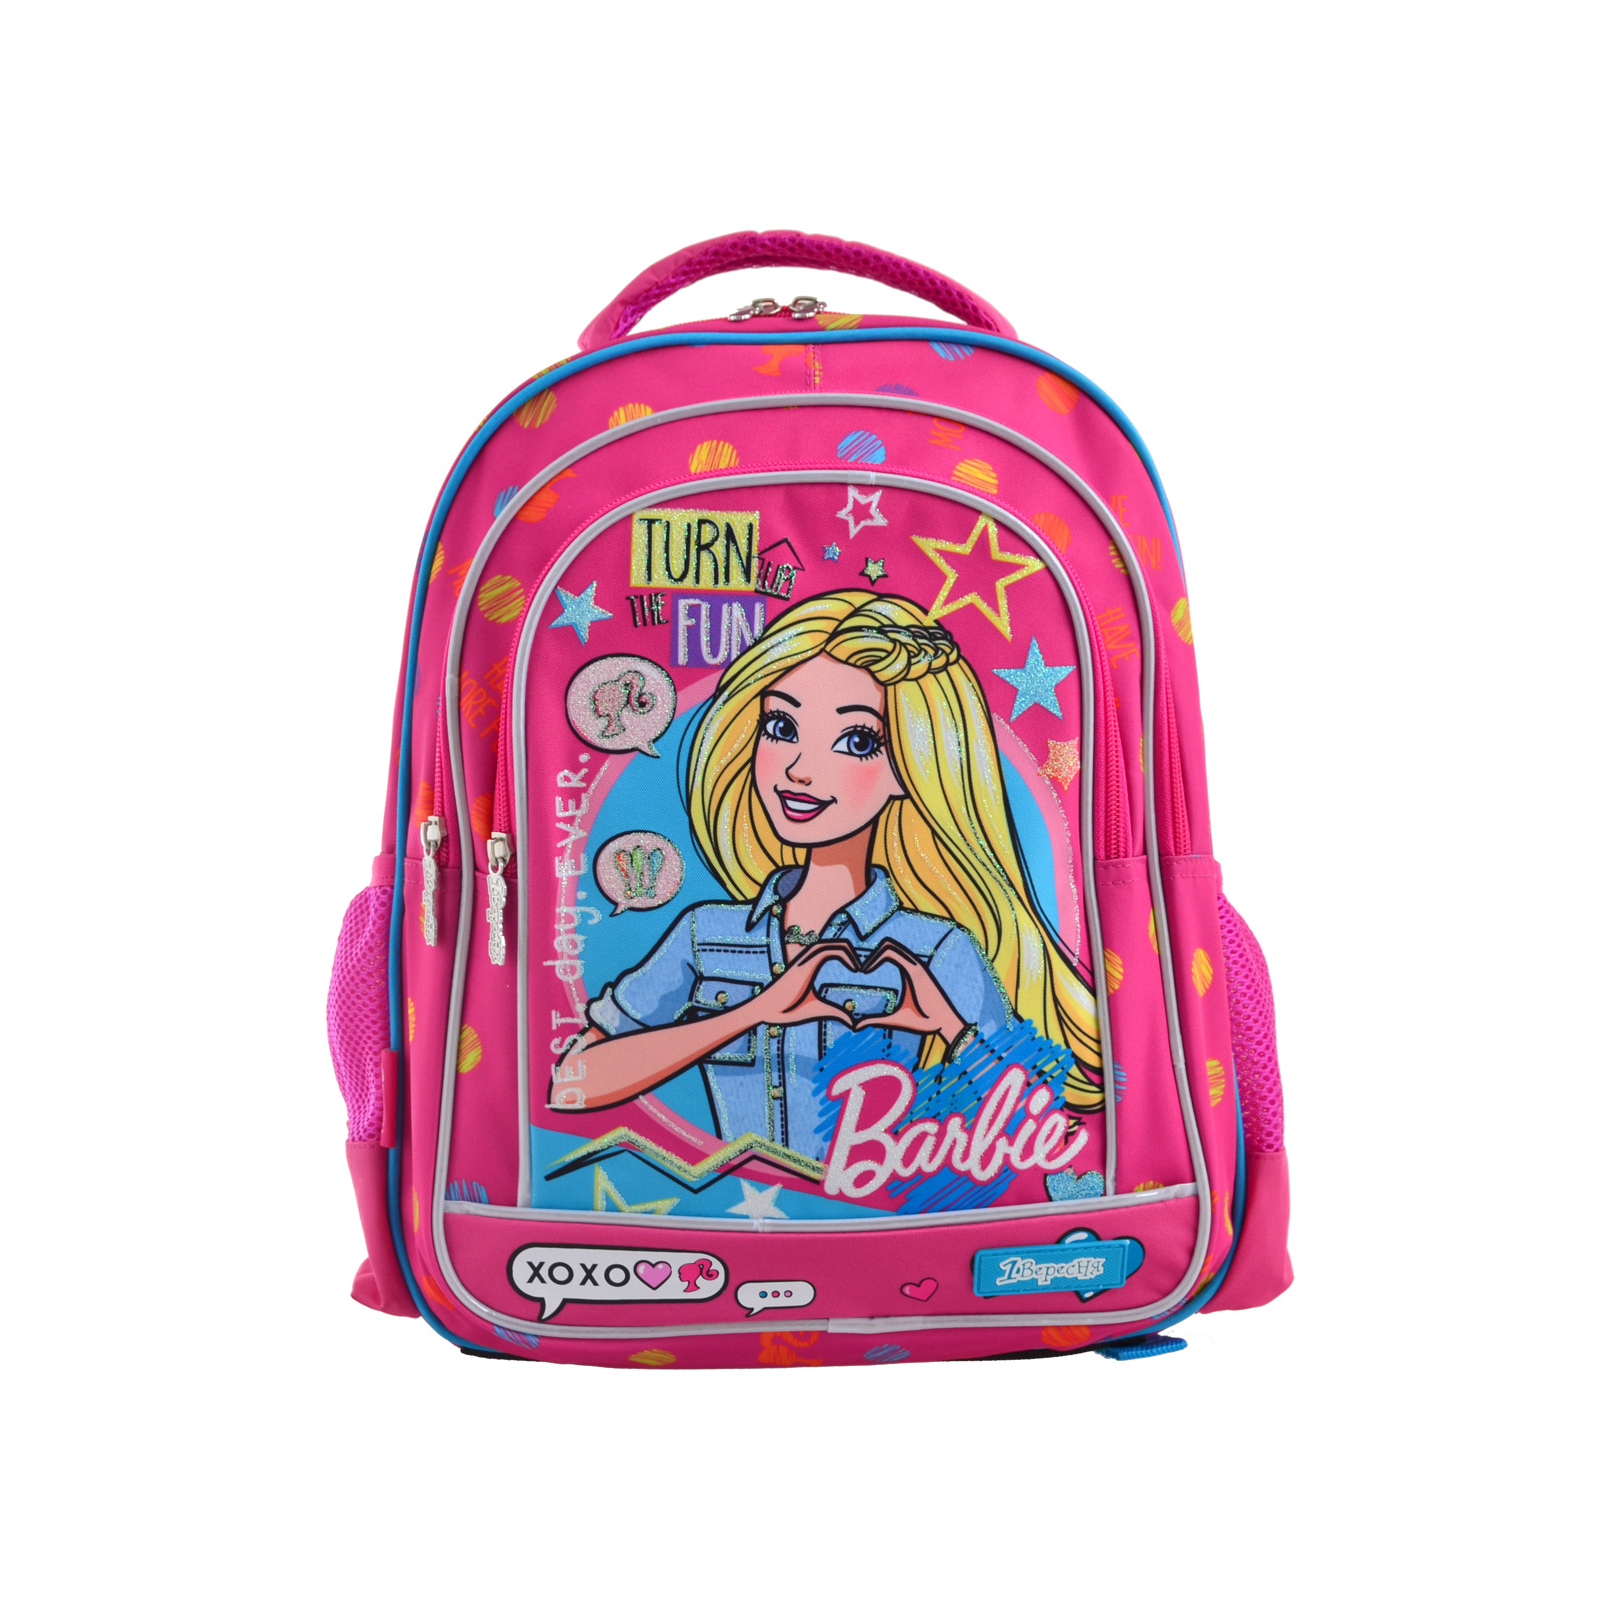 Рюкзак школьный 1 вересня S-22 Barbie (556335) изображение 2